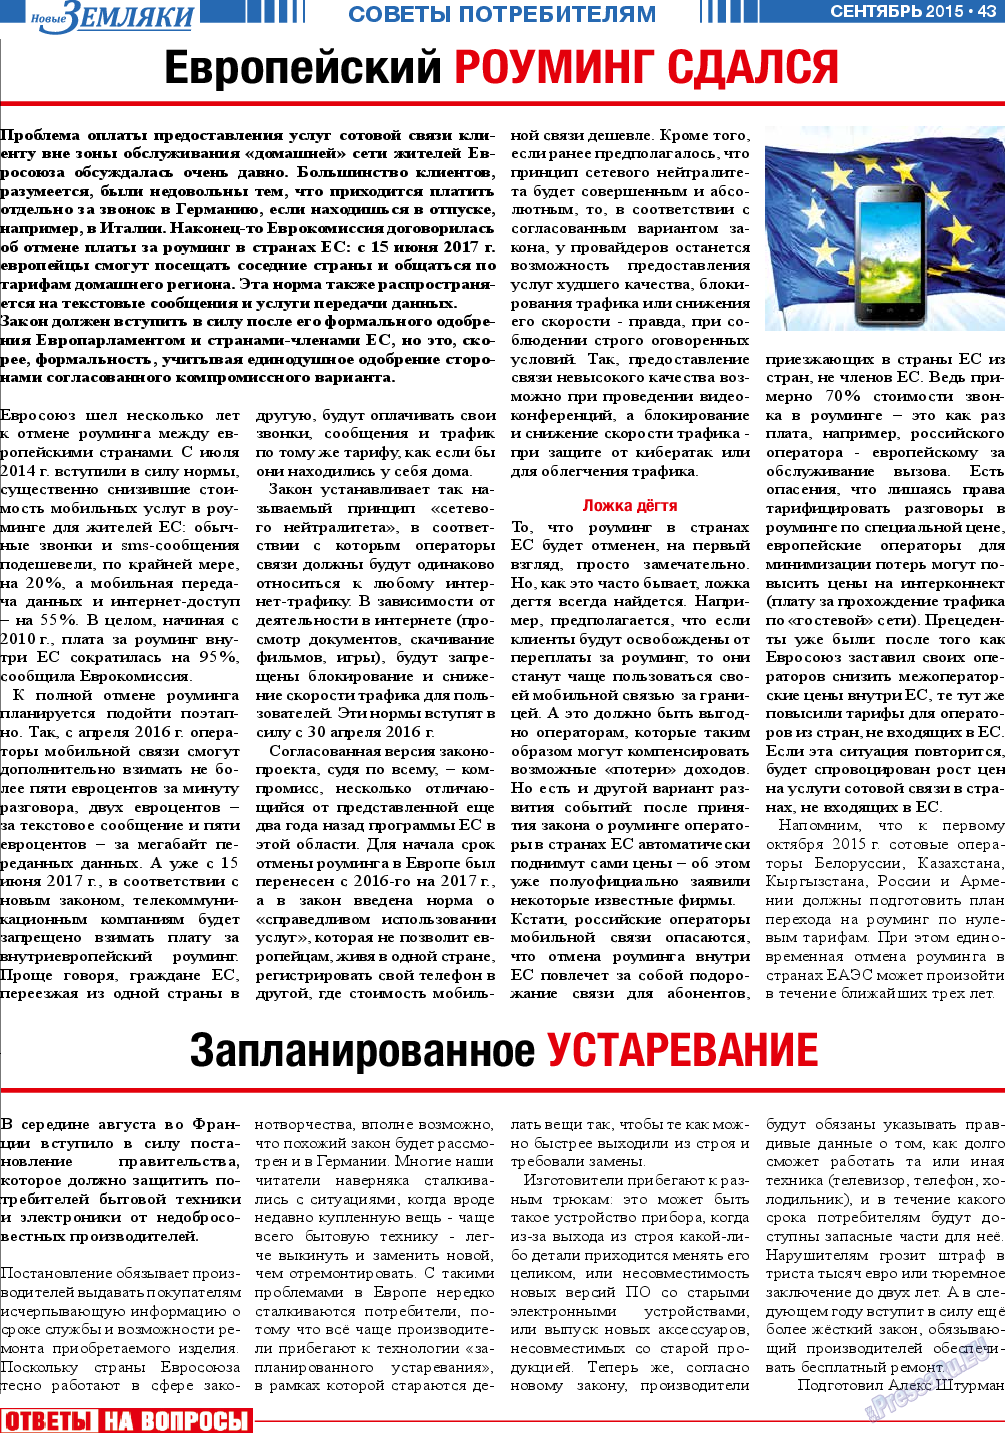 Новые Земляки, газета. 2015 №9 стр.43